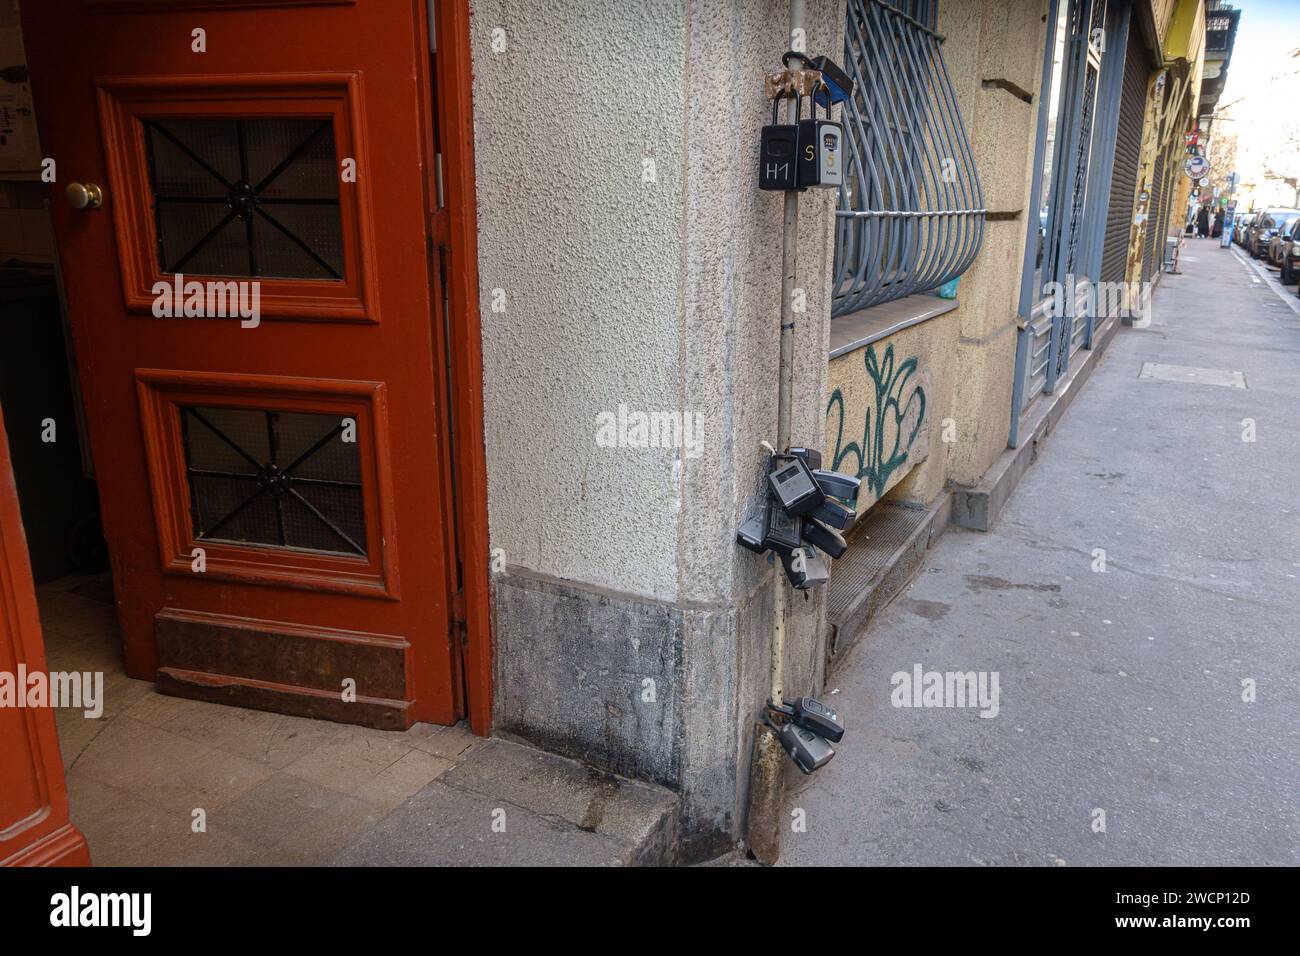 Viele Schlüsselsafes an einem Pol neben einem Gebäudeeingang, was auf Übertourismus hinweist Stockfoto